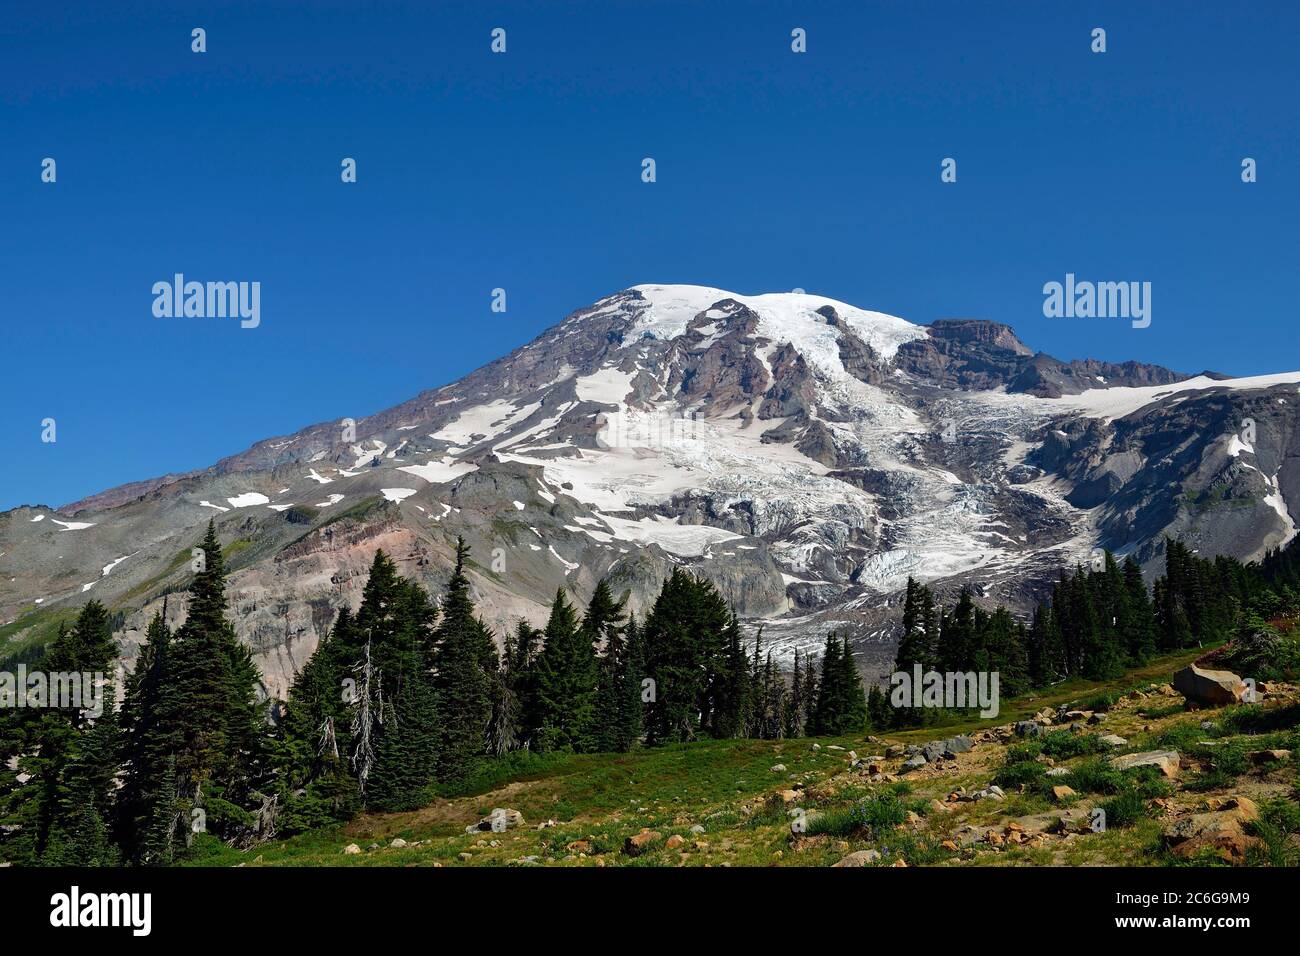 Summit Mount Rainier, Parc national du Mont Rainier, Cascade Range, Cascade Mountains, Washington, Nord-Ouest du Pacifique, États-Unis, Amérique du Nord Banque D'Images